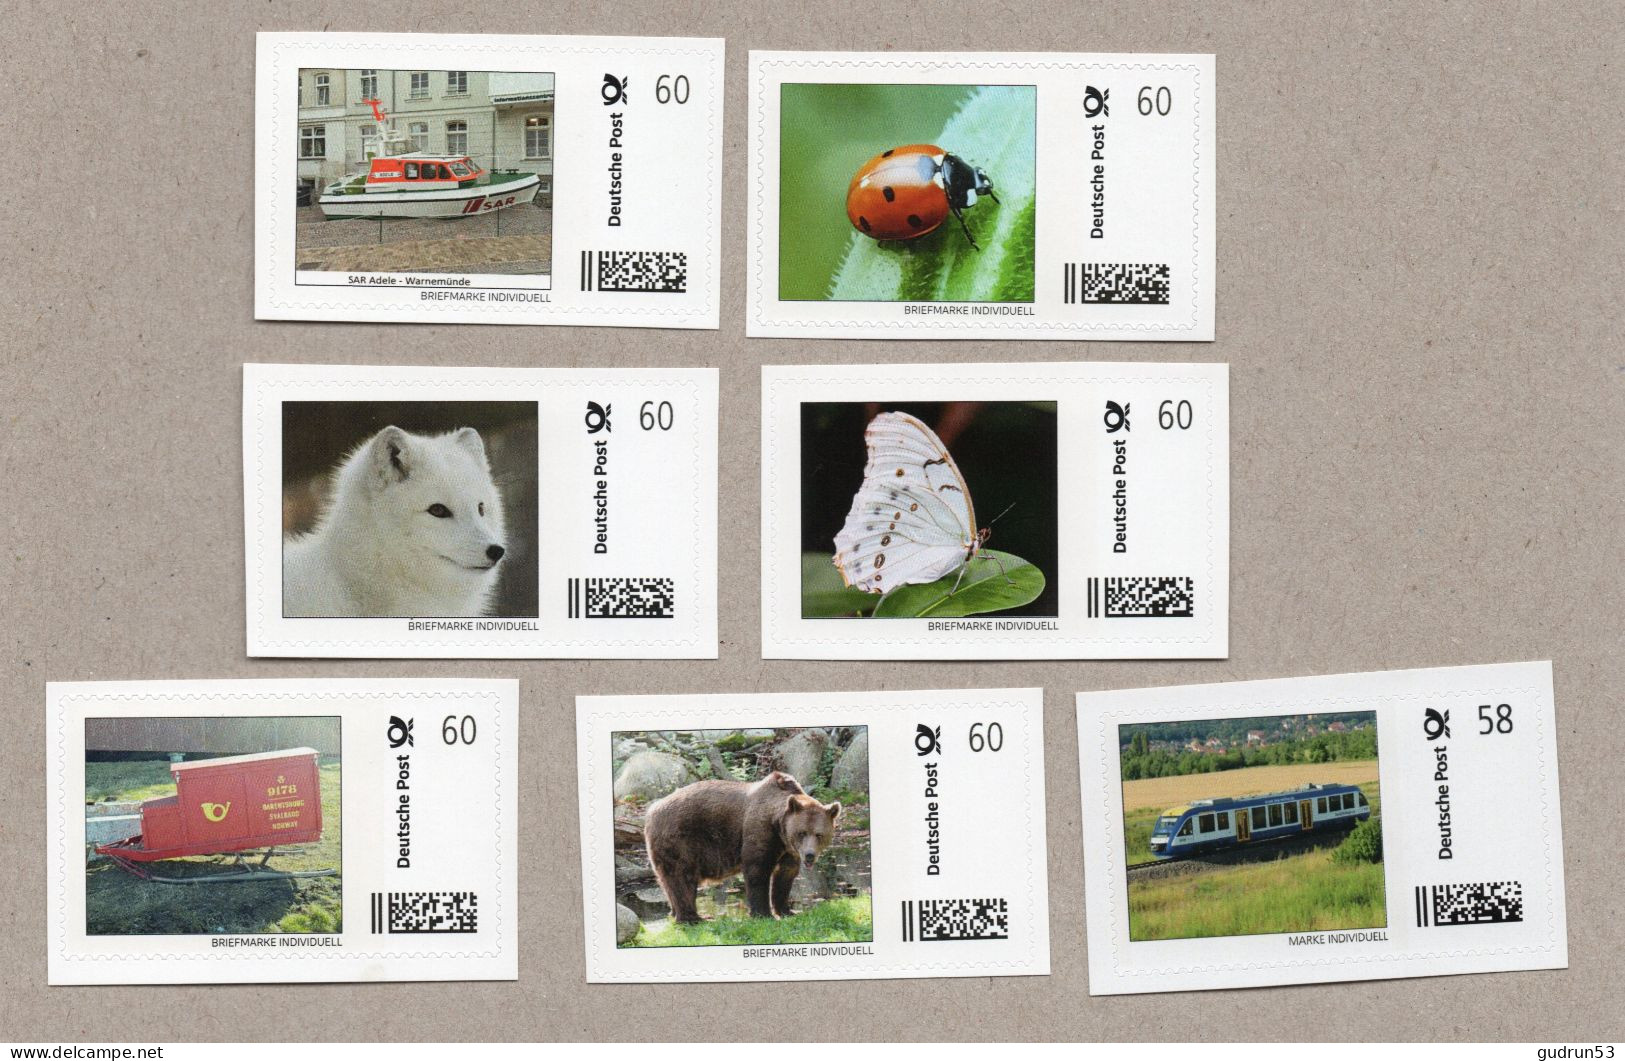 003] BRD - Privatpost -  Briefmarke Individuell - 7 Marken - Motive: Tiere Eisenbahn Post Schiff - Persoonlijke Postzegels